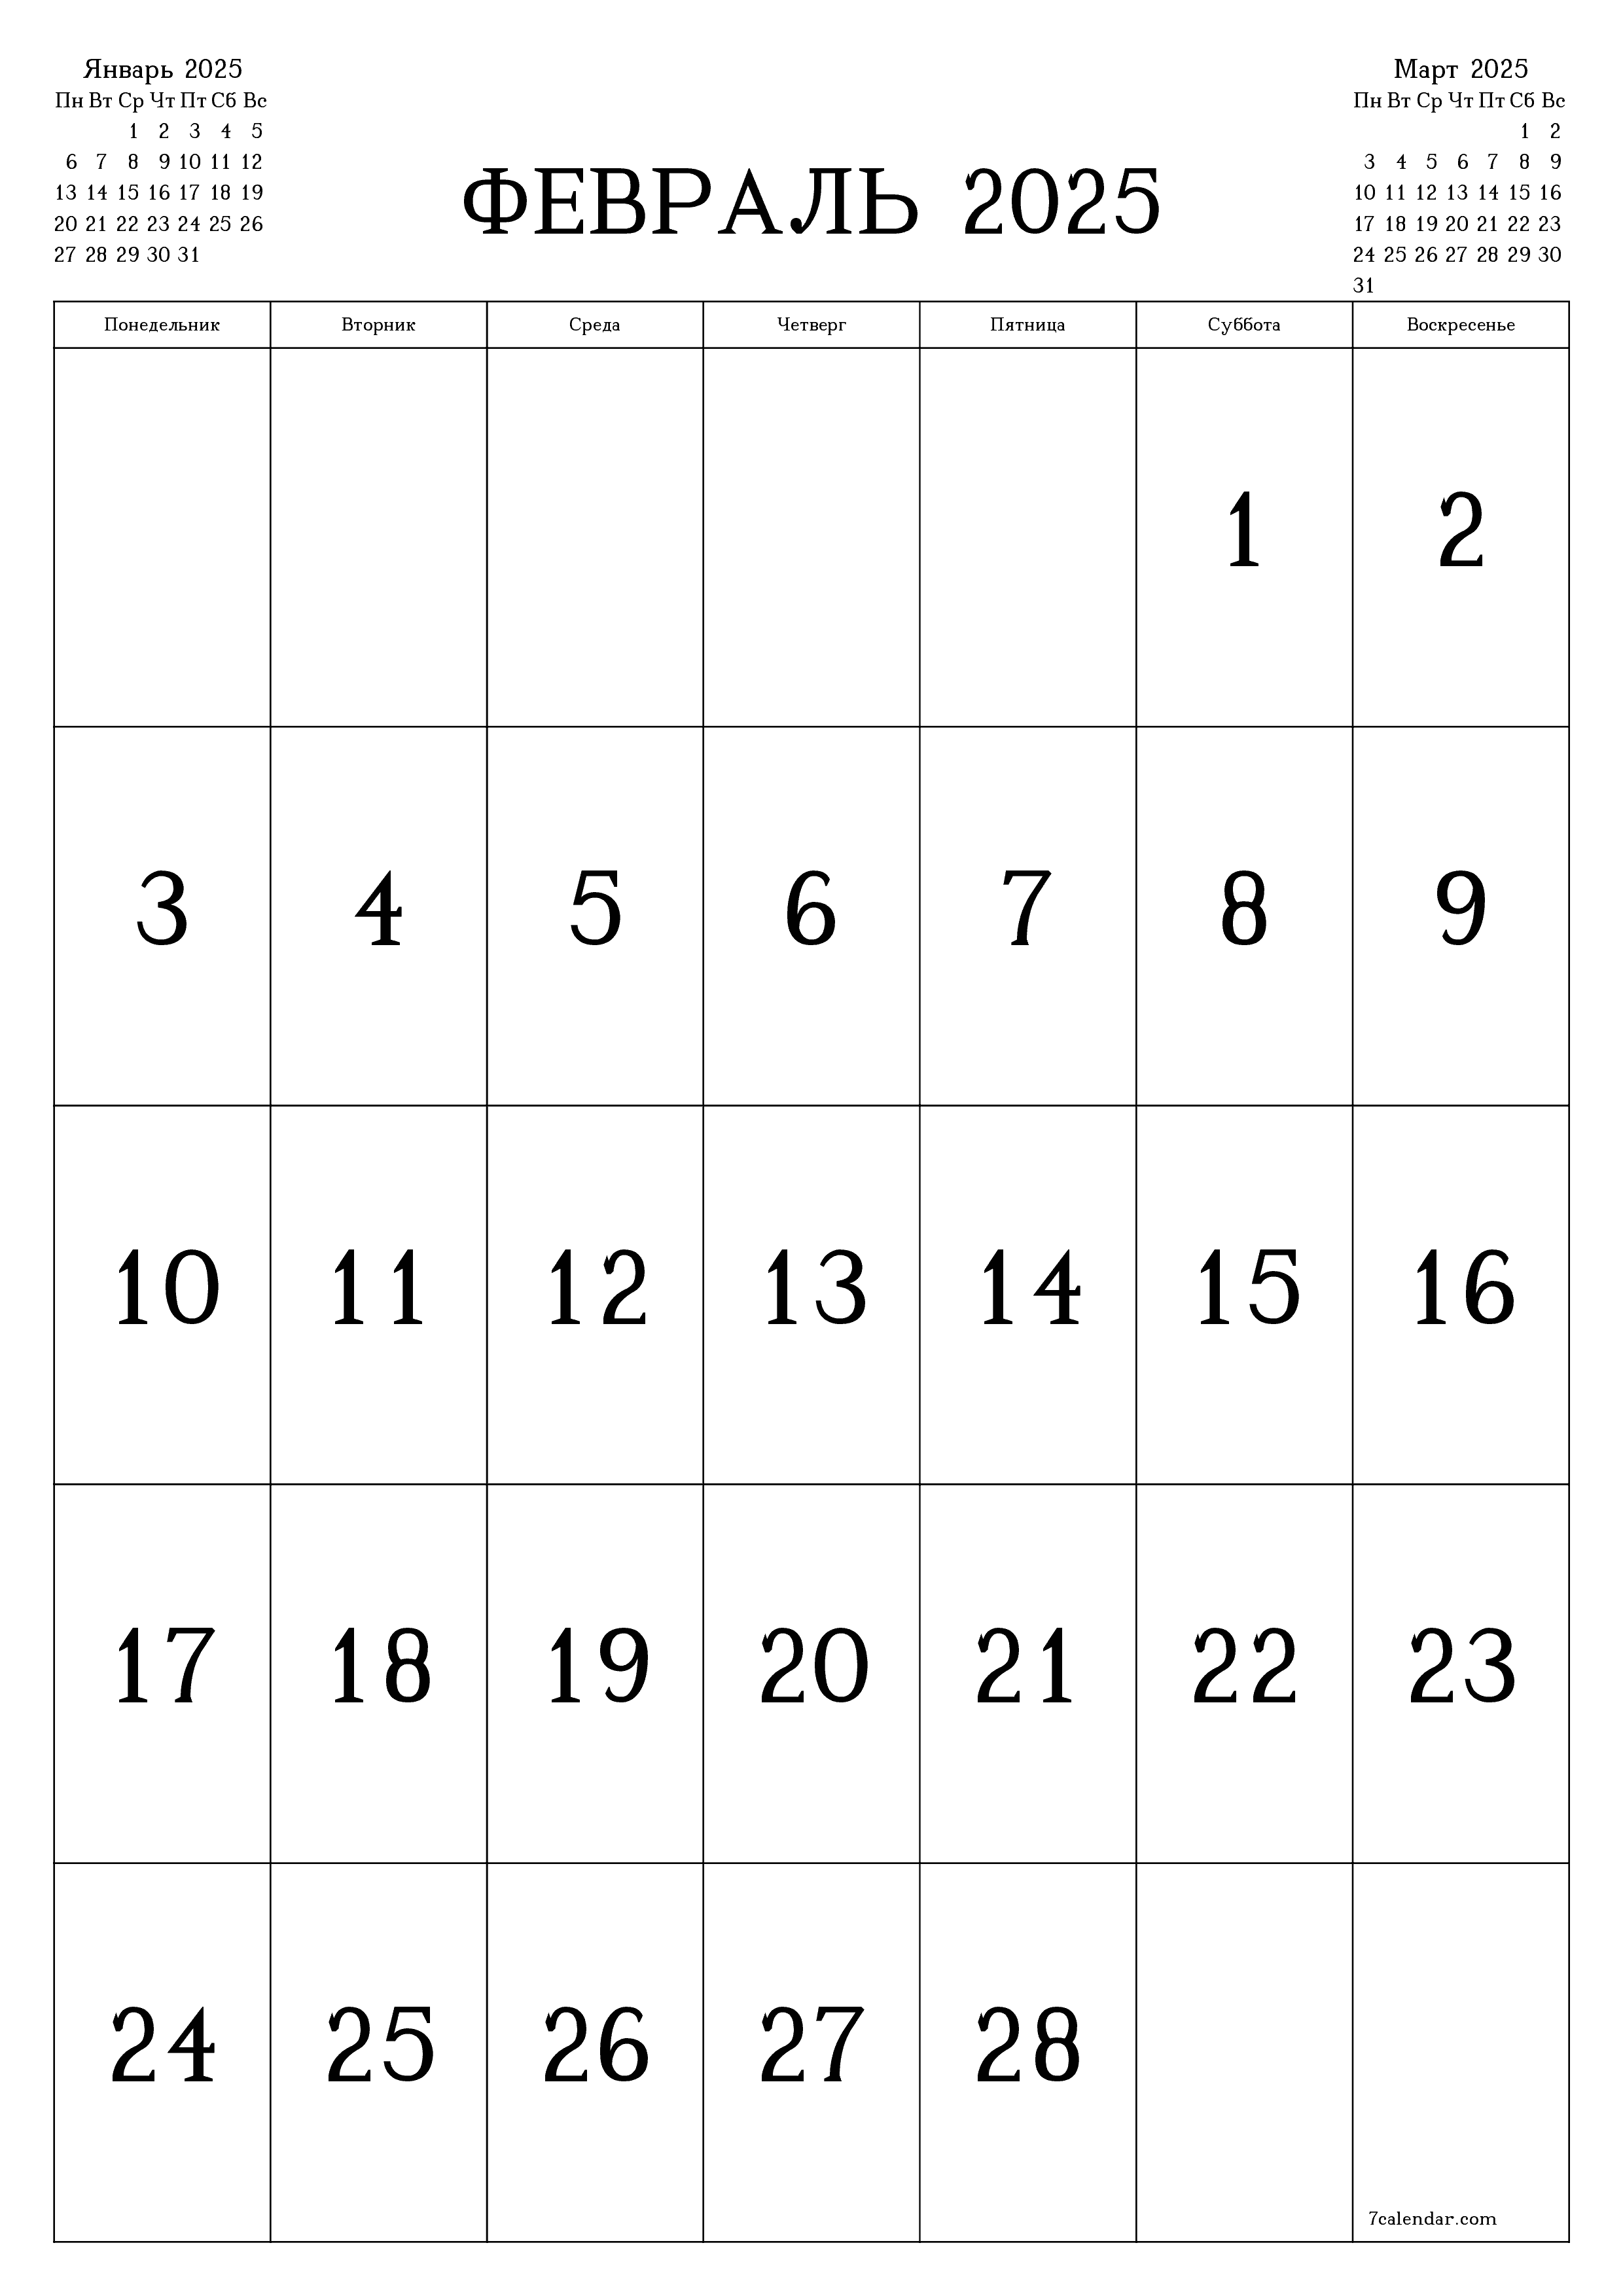 Пустой ежемесячный календарь-планер на месяц Февраль 2025